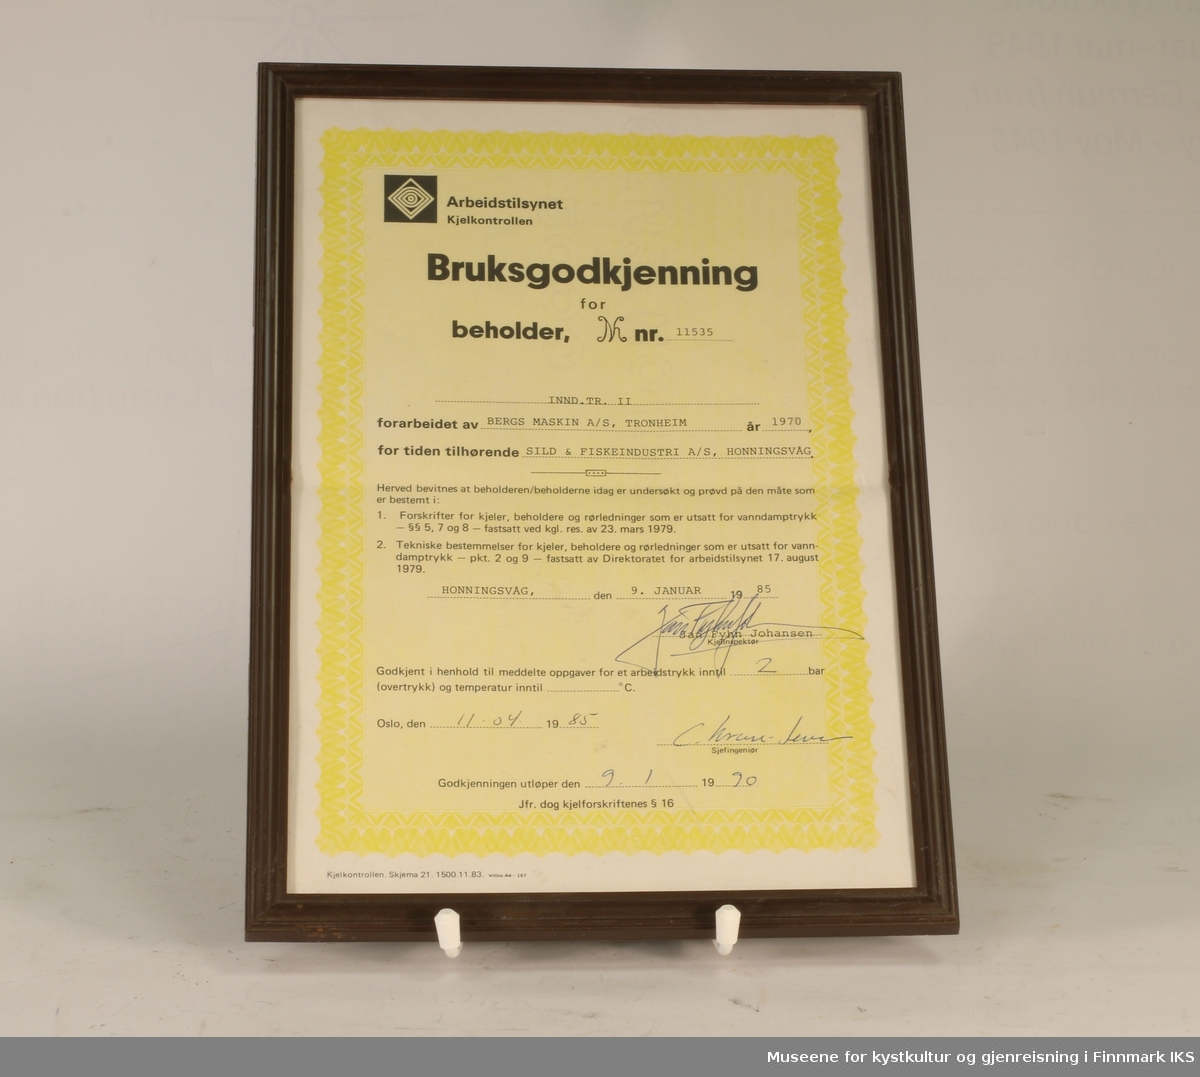 Bruksgodkjenning for INND. TR. II (beholder nr. 11535) hos Sild & Fiskeindustri AS, utsendt av Arbeidstilsynet Kjelkontrollen i 1985. Hvitt og gult papir med sort tekst. Utfylt for hånd. Innrammet.